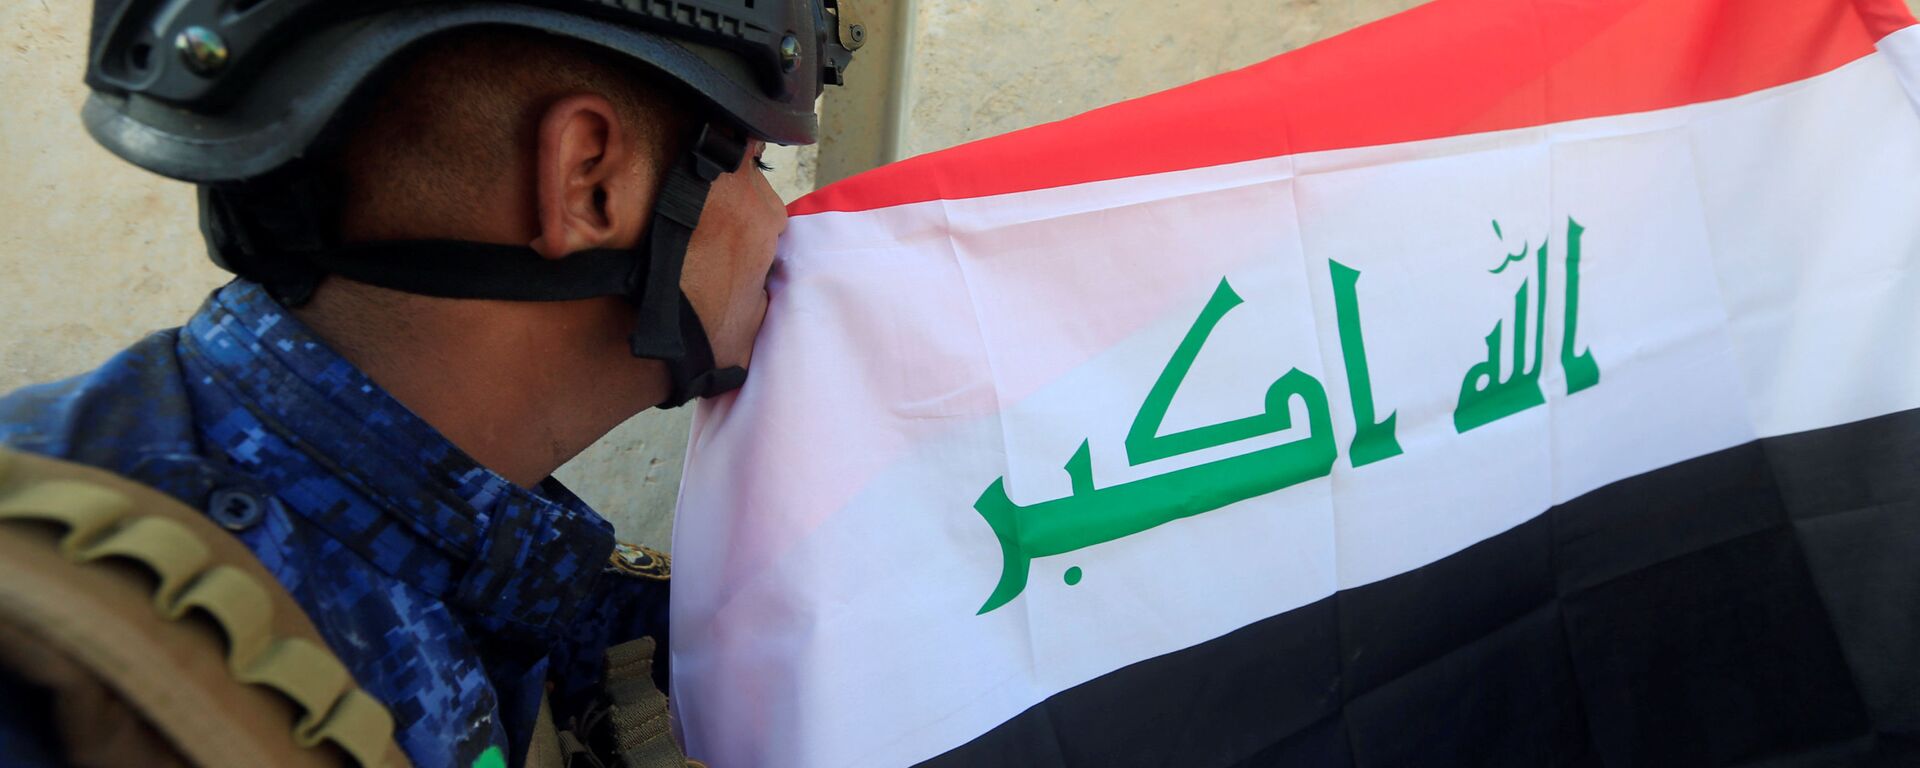 أحد عناصر الشرطة العراقية يقبل العلم العراقي بعد تحرير الموصل، العراق 9 يوليو/ تموز 2017 - سبوتنيك عربي, 1920, 09.03.2022